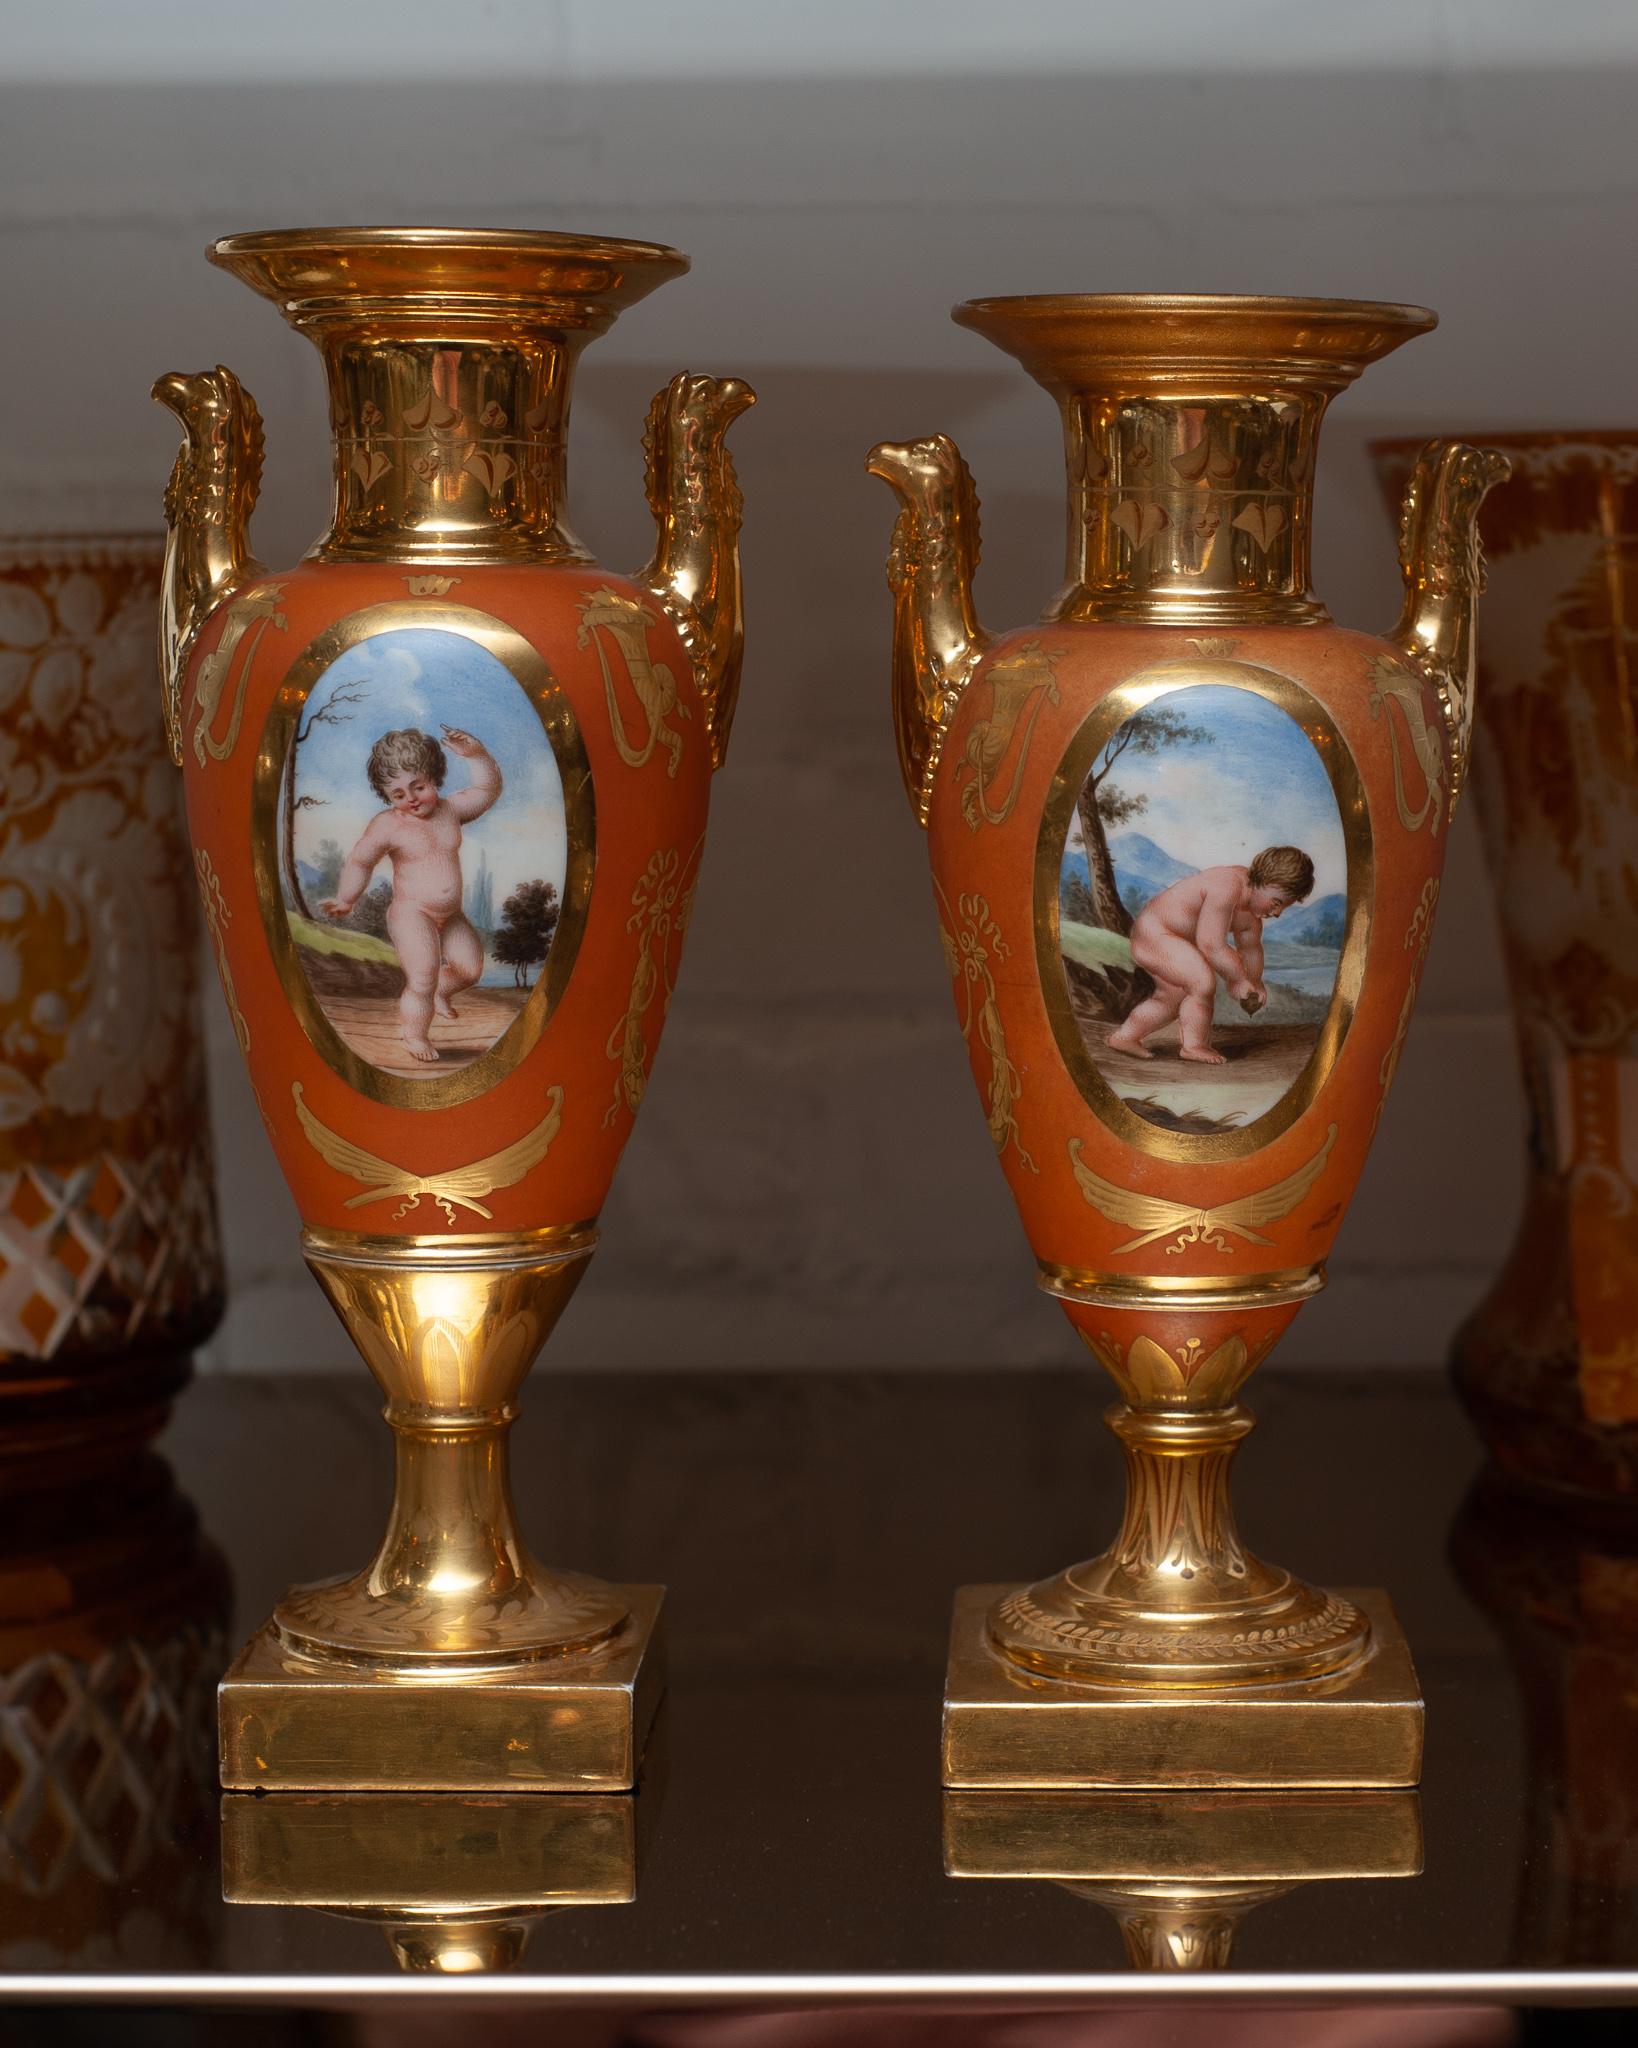 Une belle paire d'urnes allemandes peintes à la main, de couleur orange, avec des bases et des détails dorés. Chaque panneau de chaque côté de chaque urne représente une peinture unique. Poignées et bases de piédestal en Griffon doré.